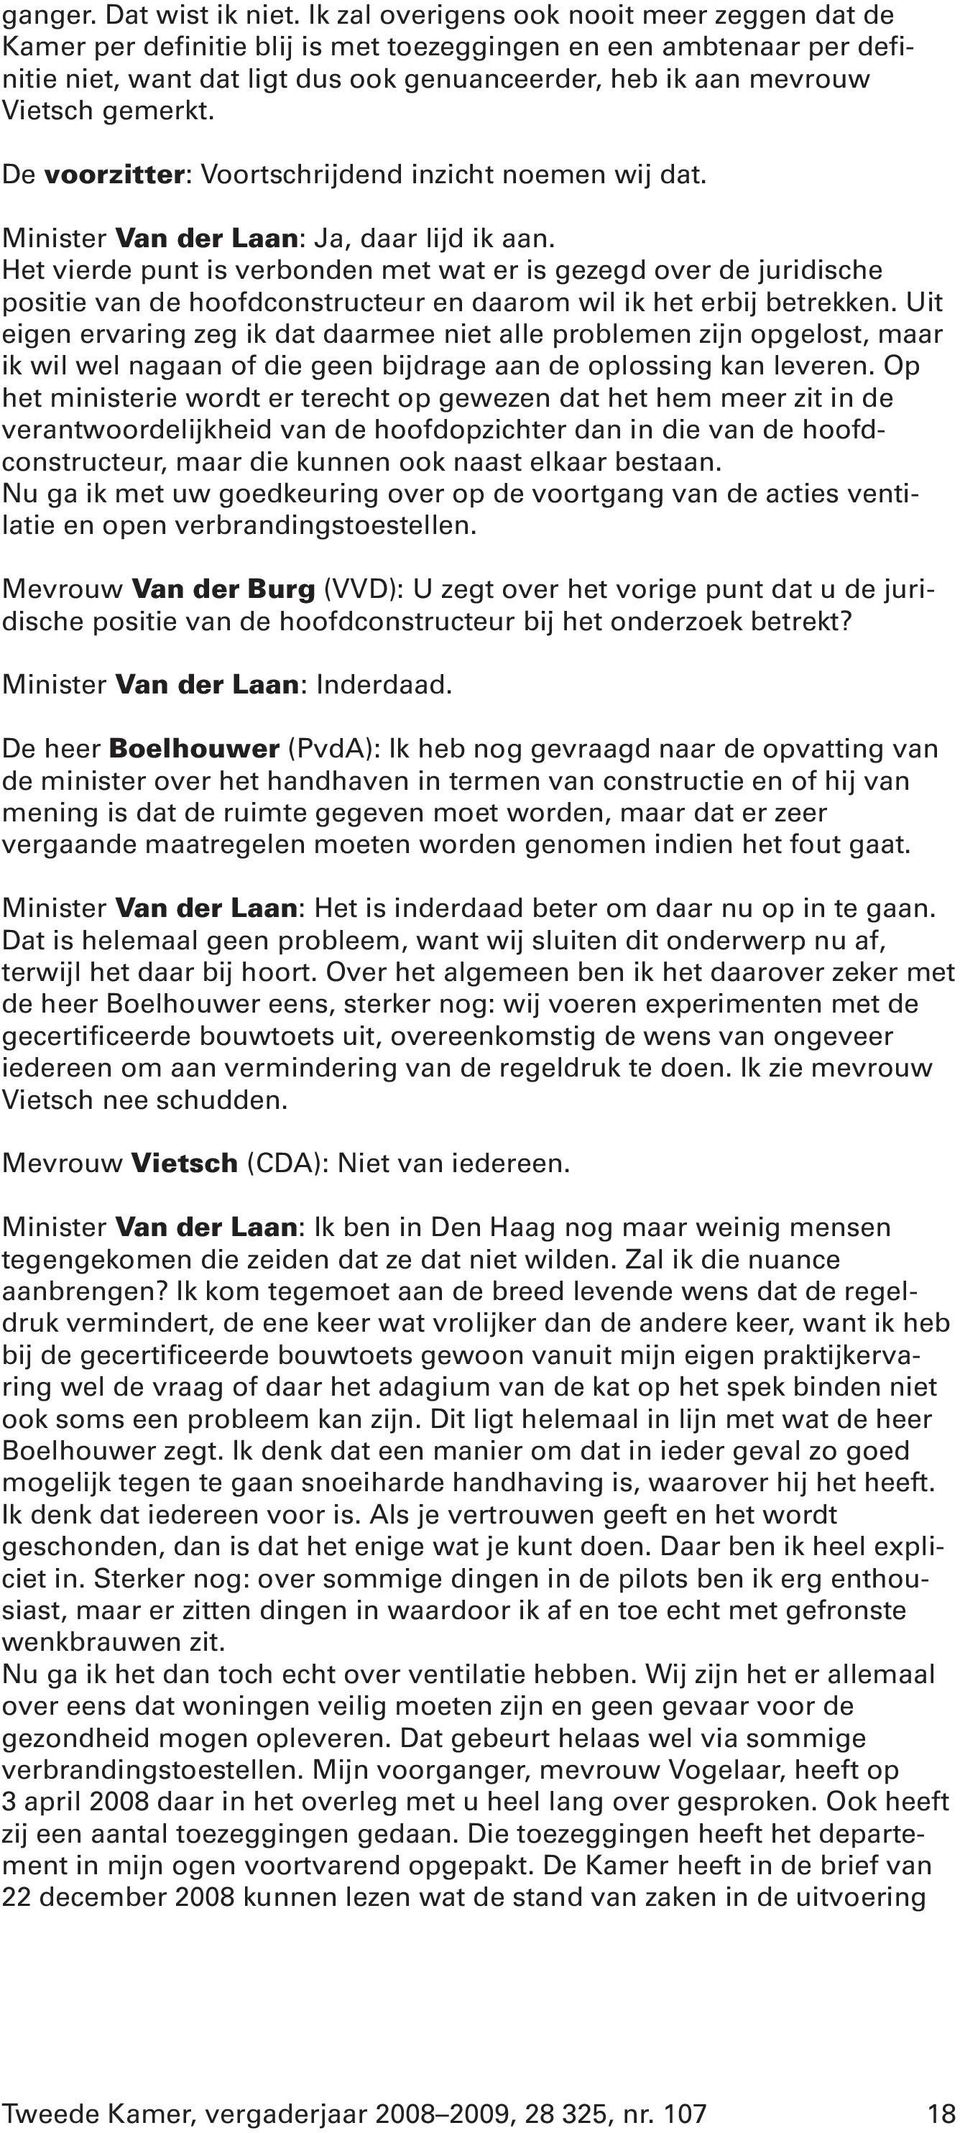 De voorzitter: Voortschrijdend inzicht noemen wij dat. Minister Van der Laan: Ja, daar lijd ik aan.